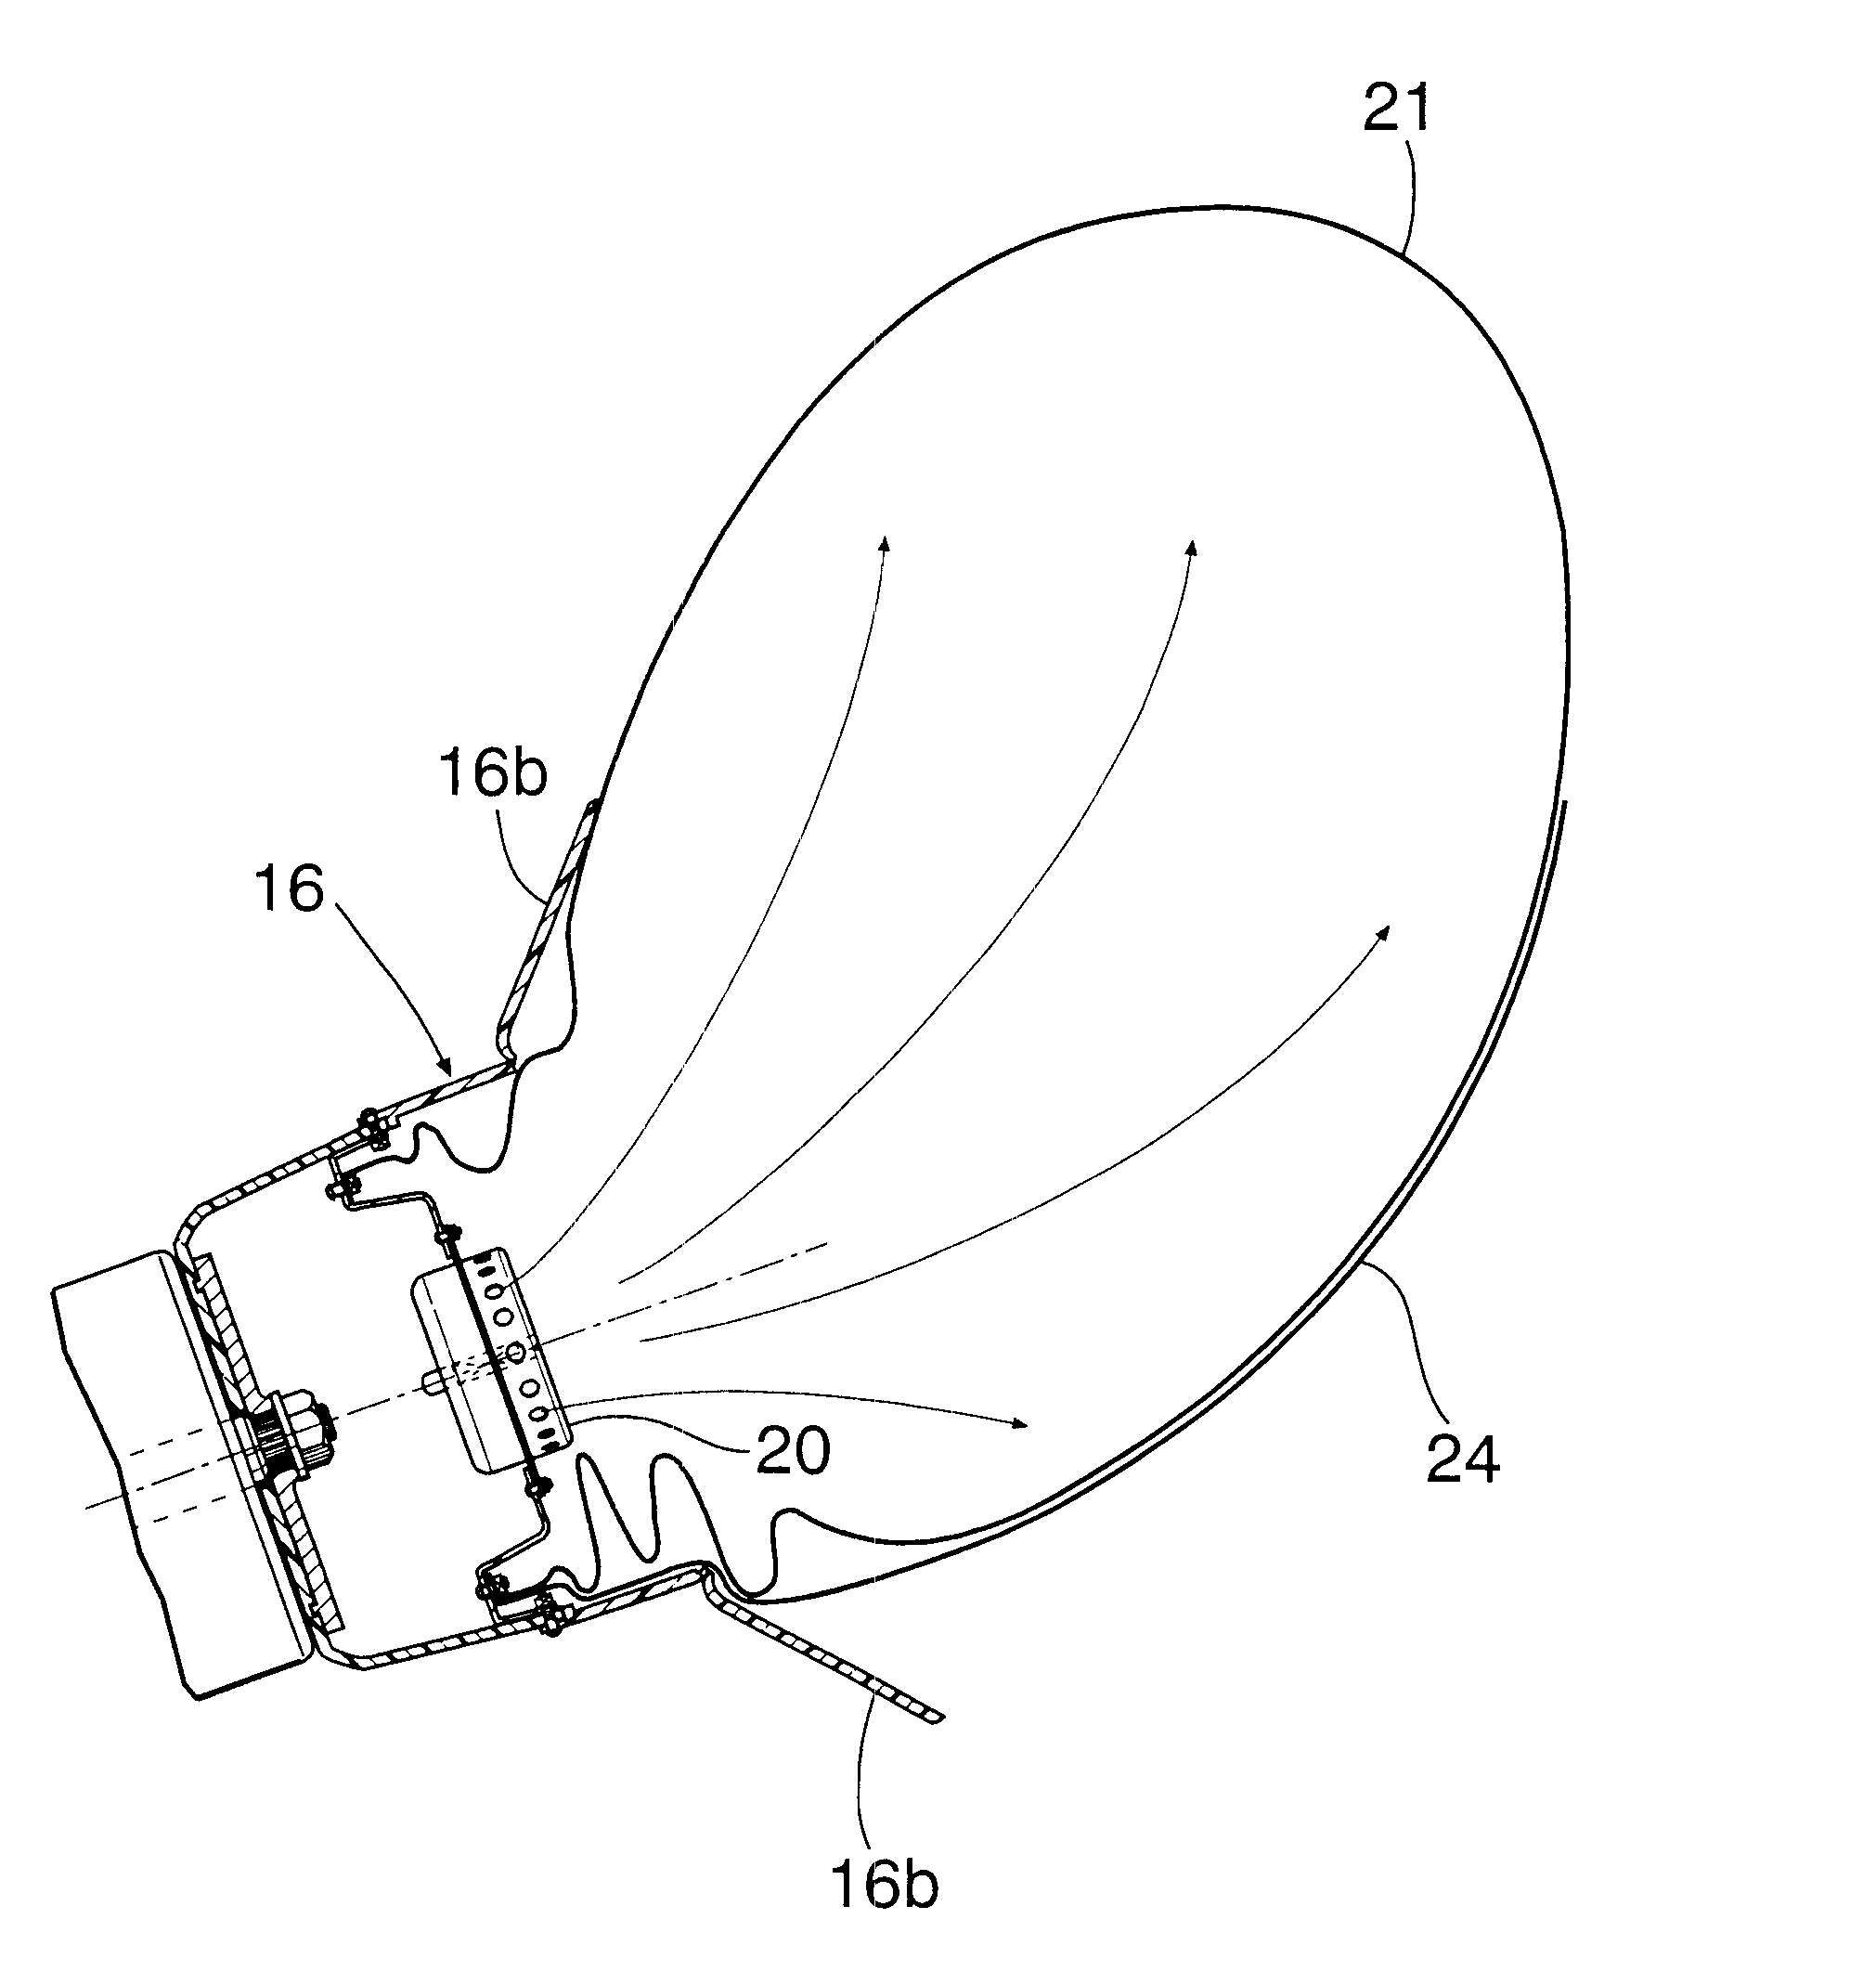 Air bag device